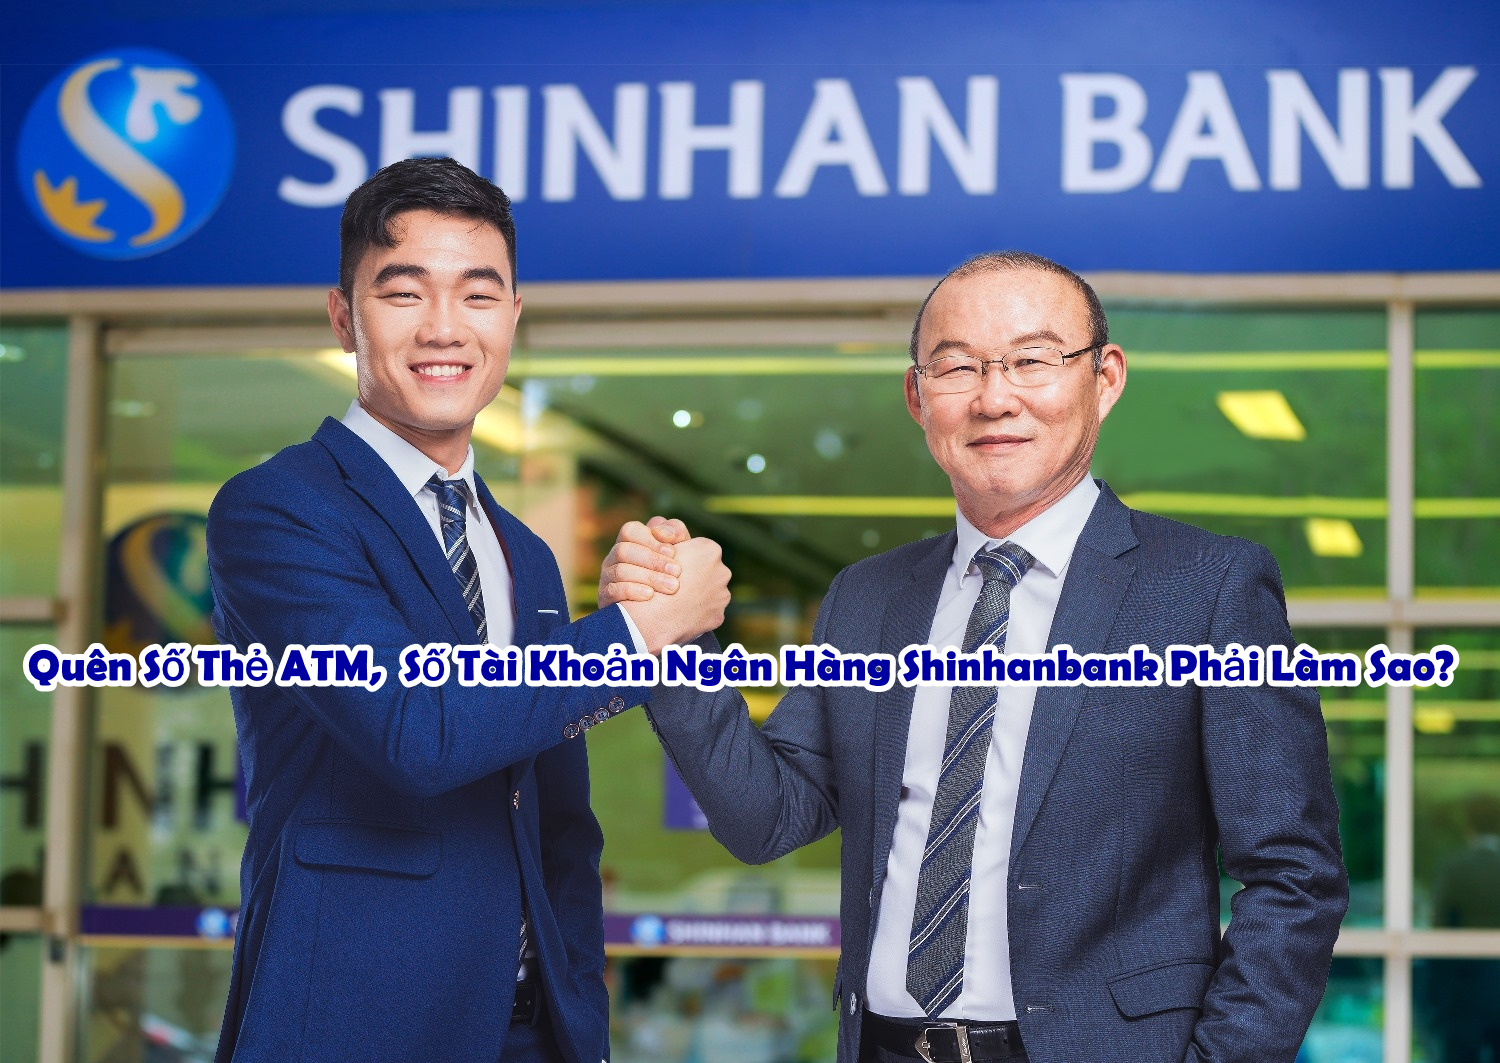 Quên Số Thẻ ATM, Số Tài Khoản Ngân Hàng Shinhanbank ...